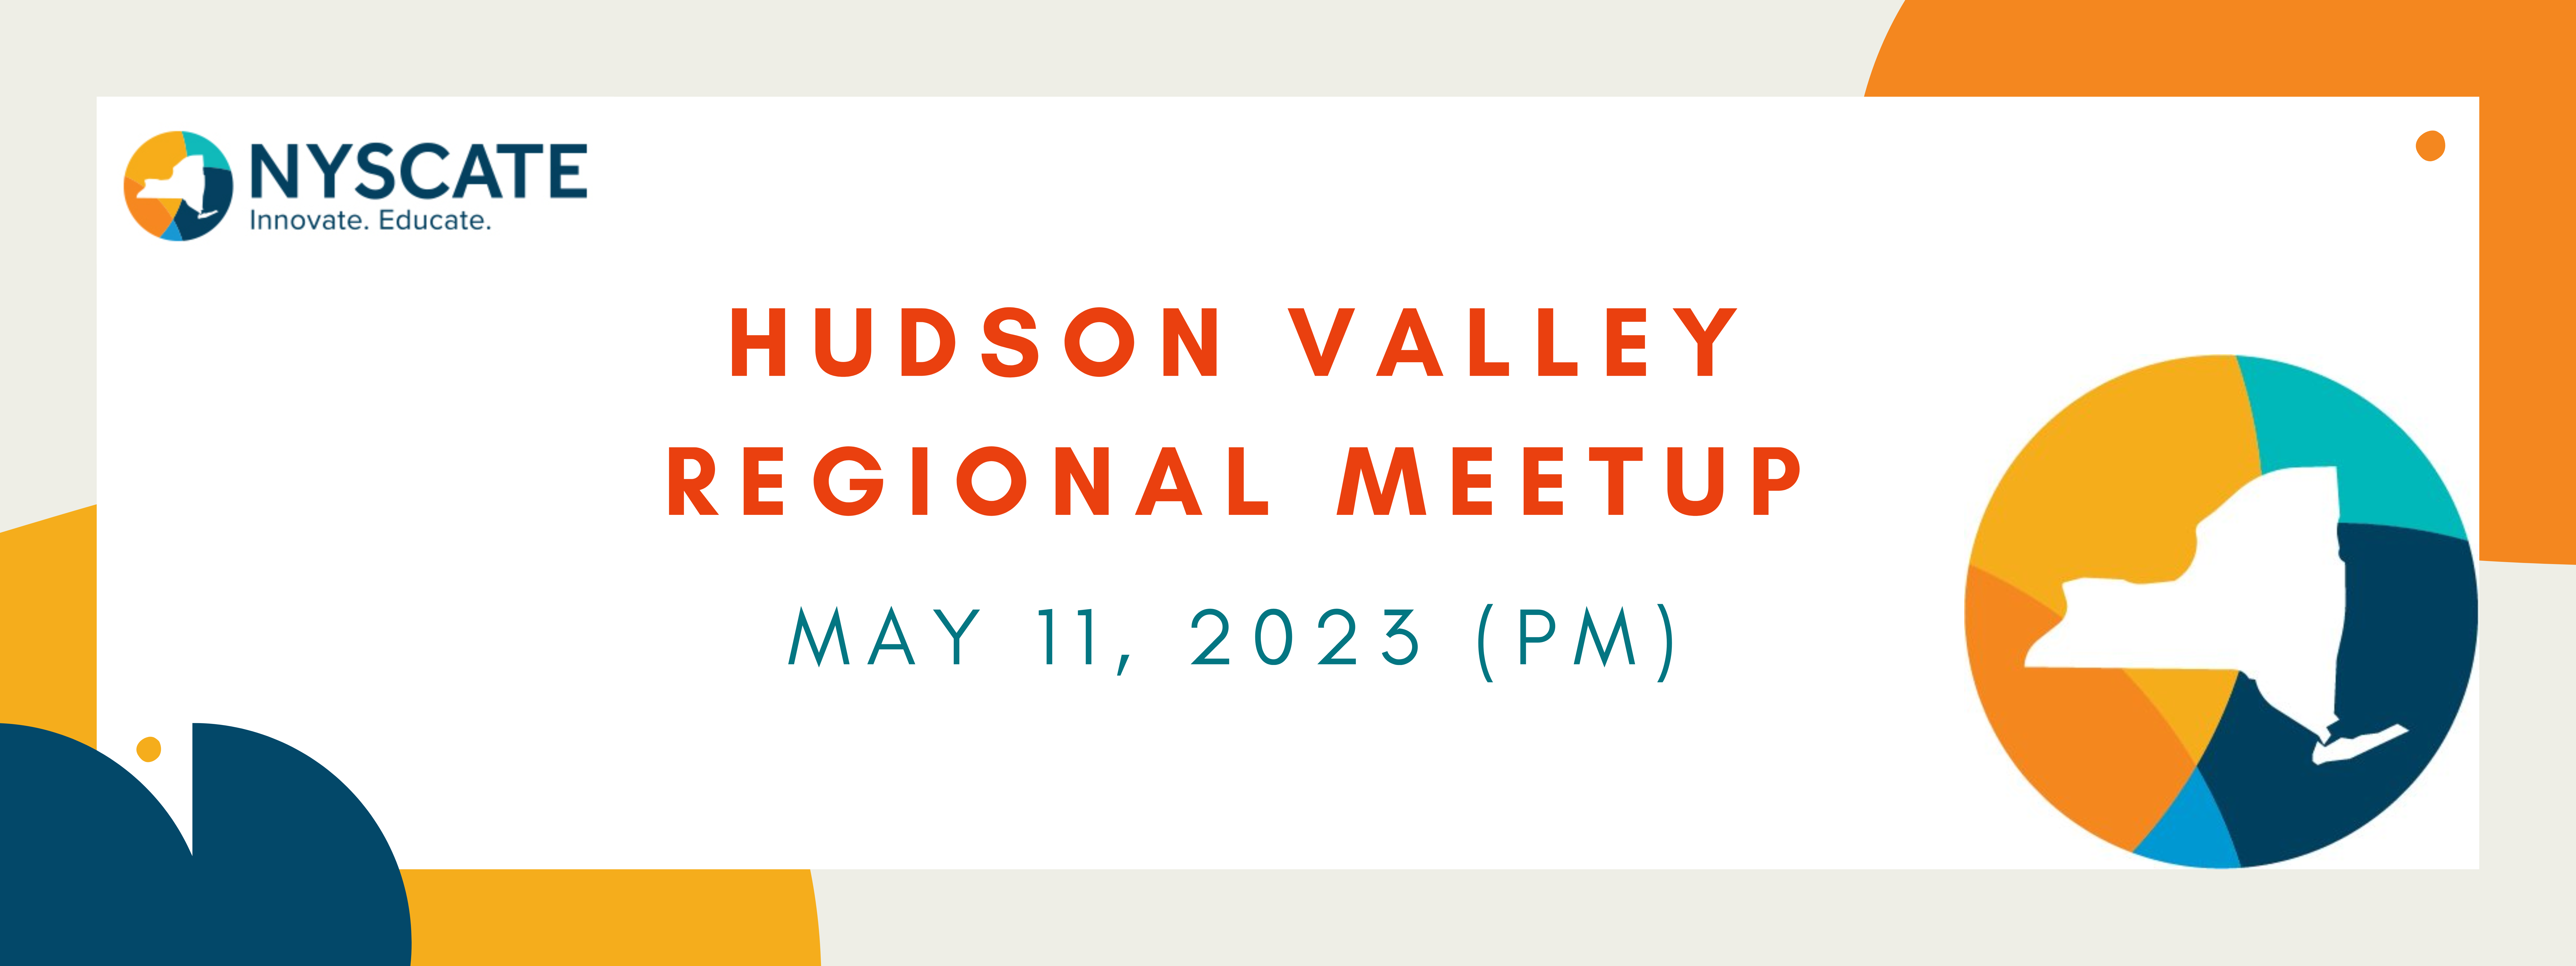 Hudson Valley Meetup flyer